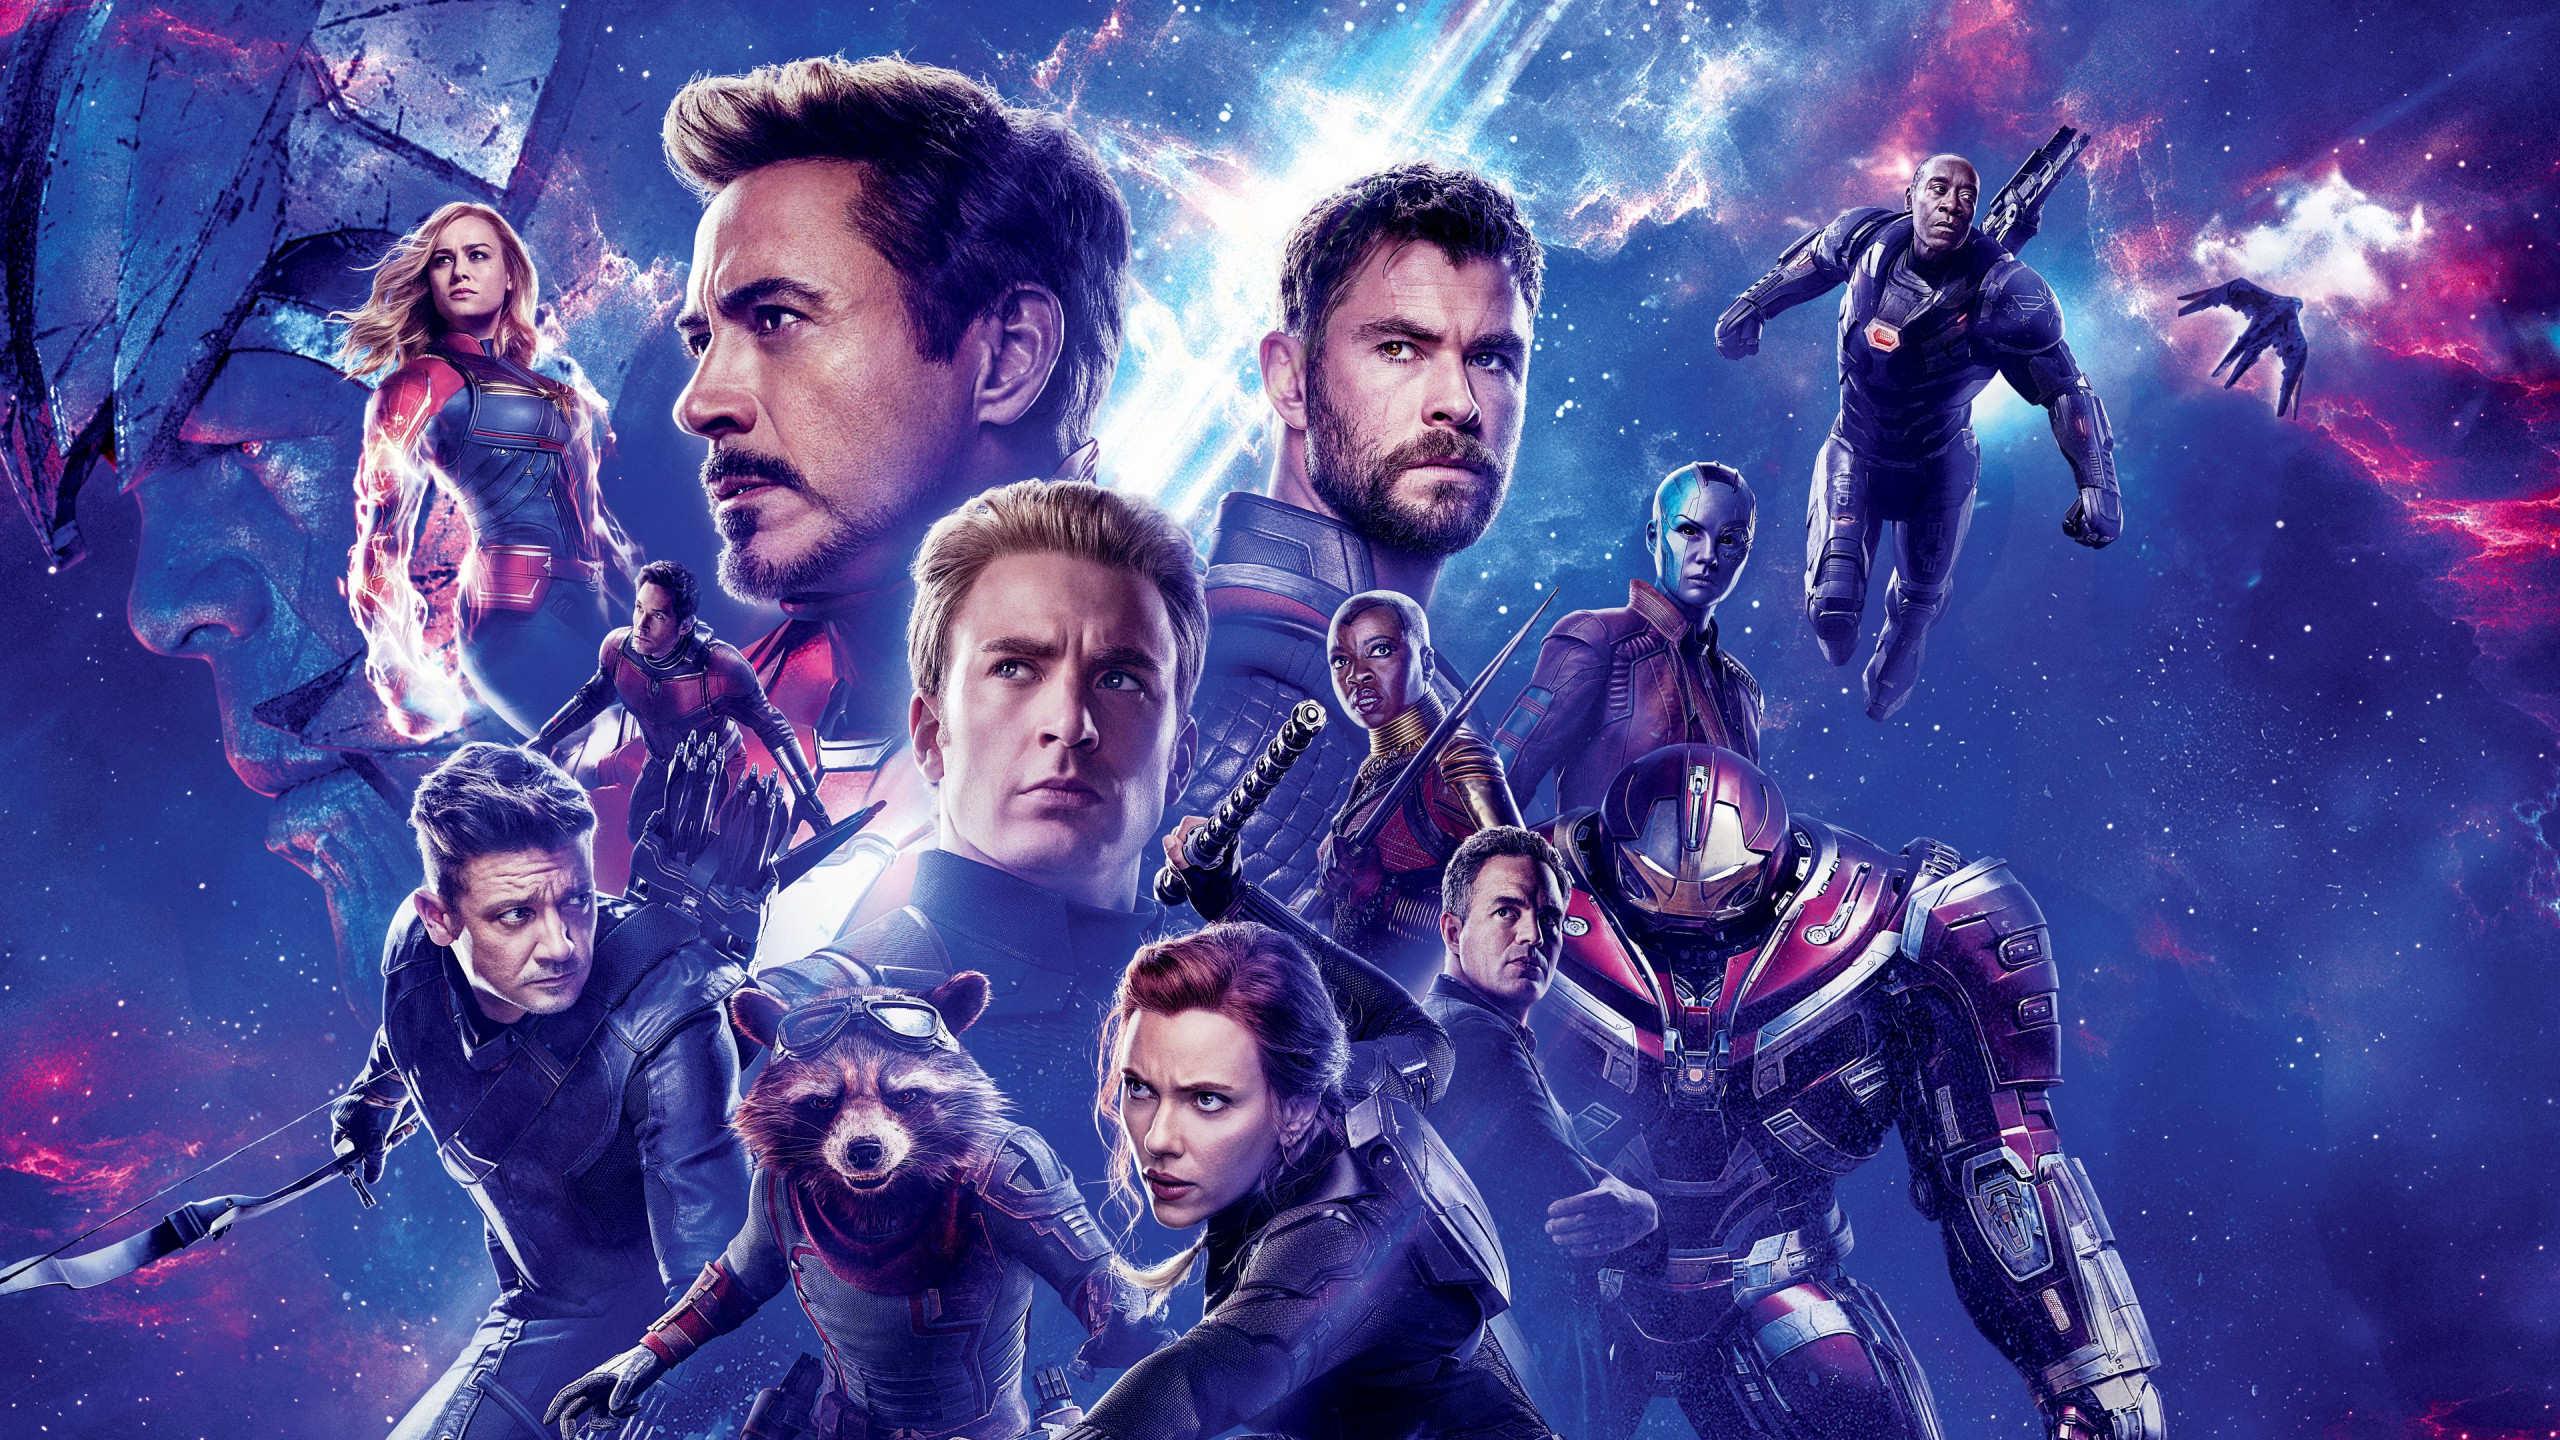 Download wallpaper: Avengers: Endgame 2560x1440